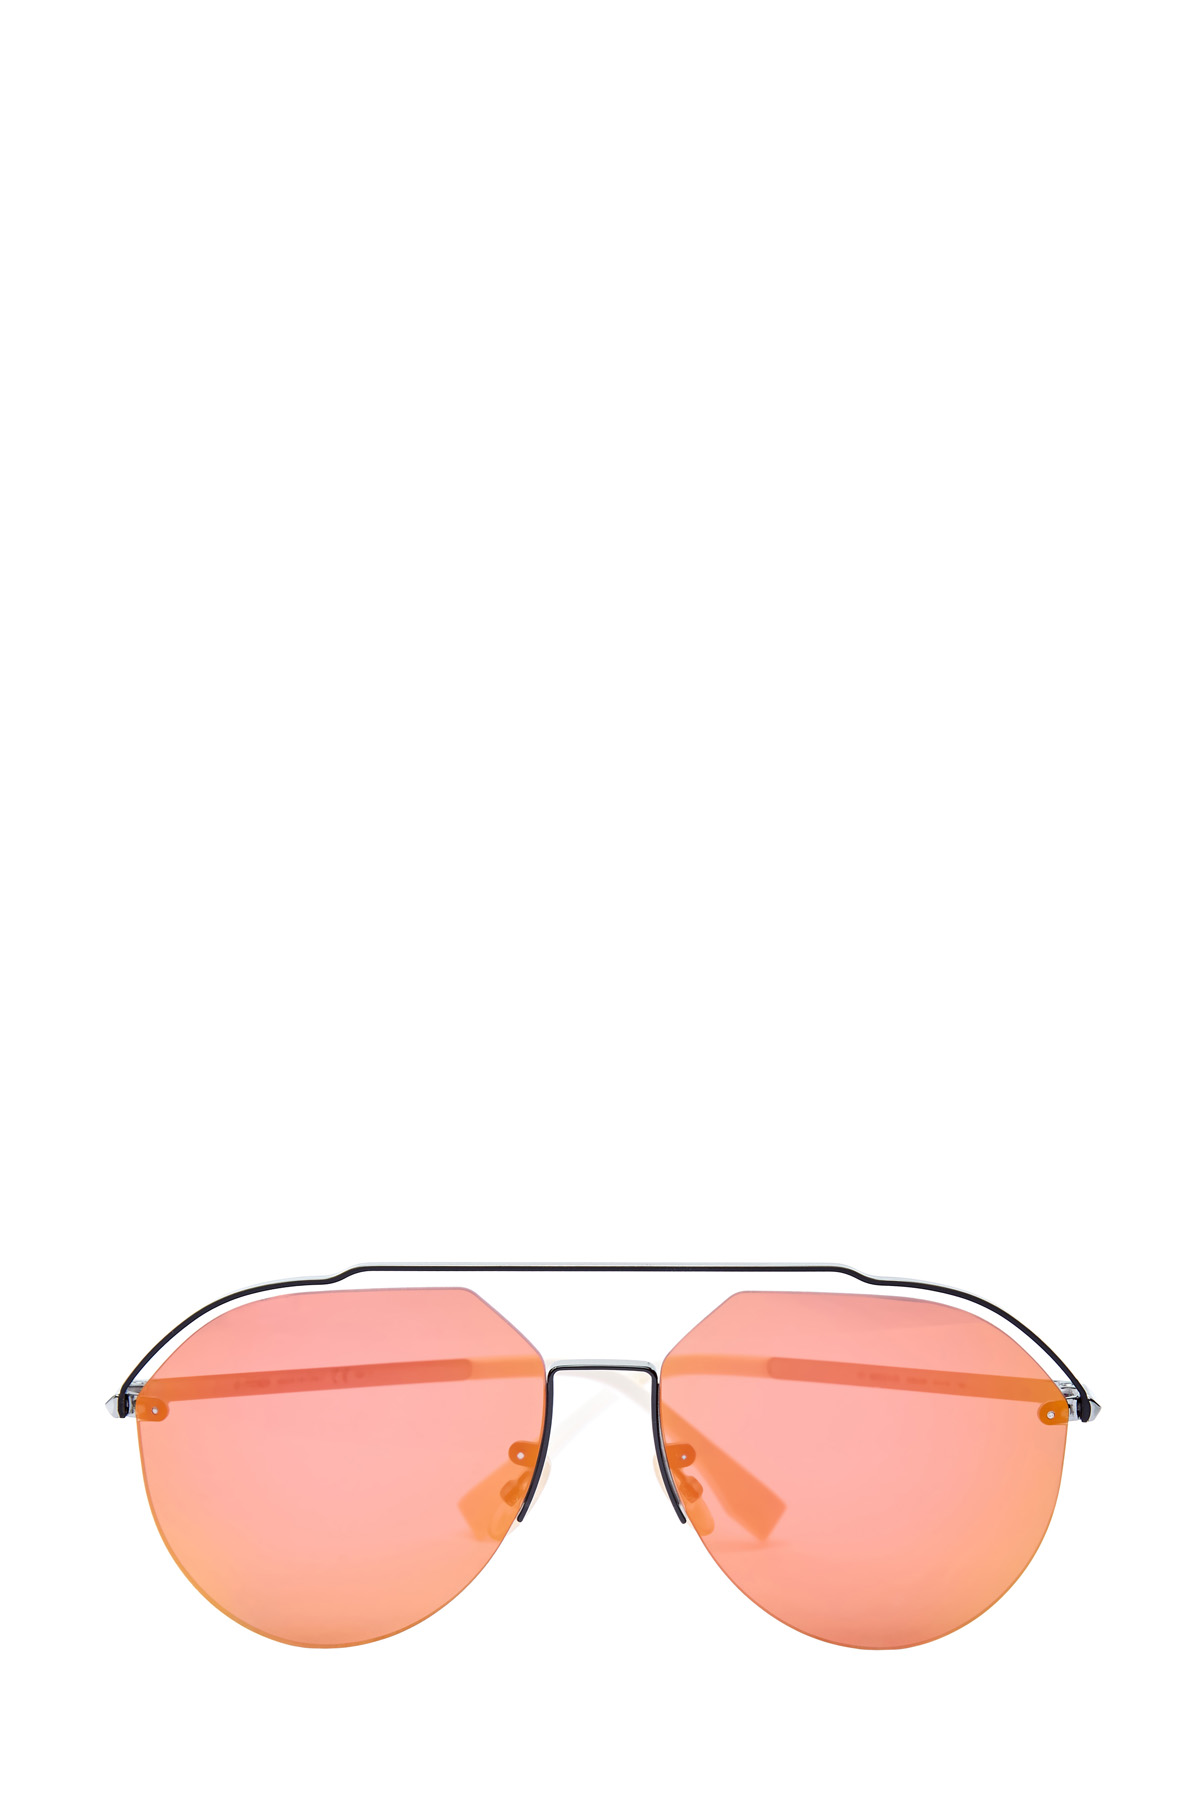 Очки-авиаторы в тонкой металлической оправе FENDI (sunglasses), цвет мульти, размер XS;S - фото 1